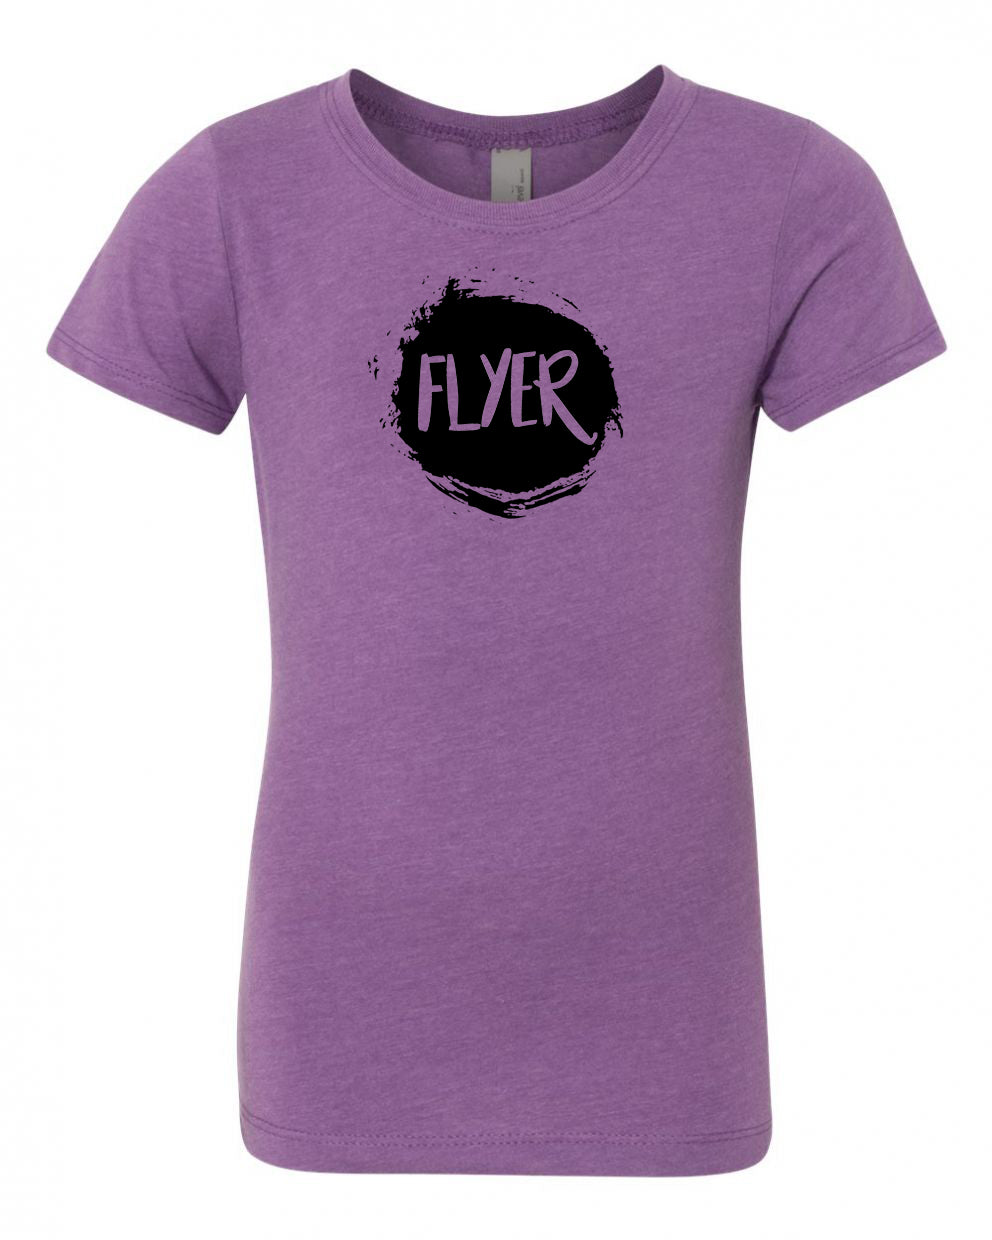 Flyer Girls T-Shirt Purple Berry